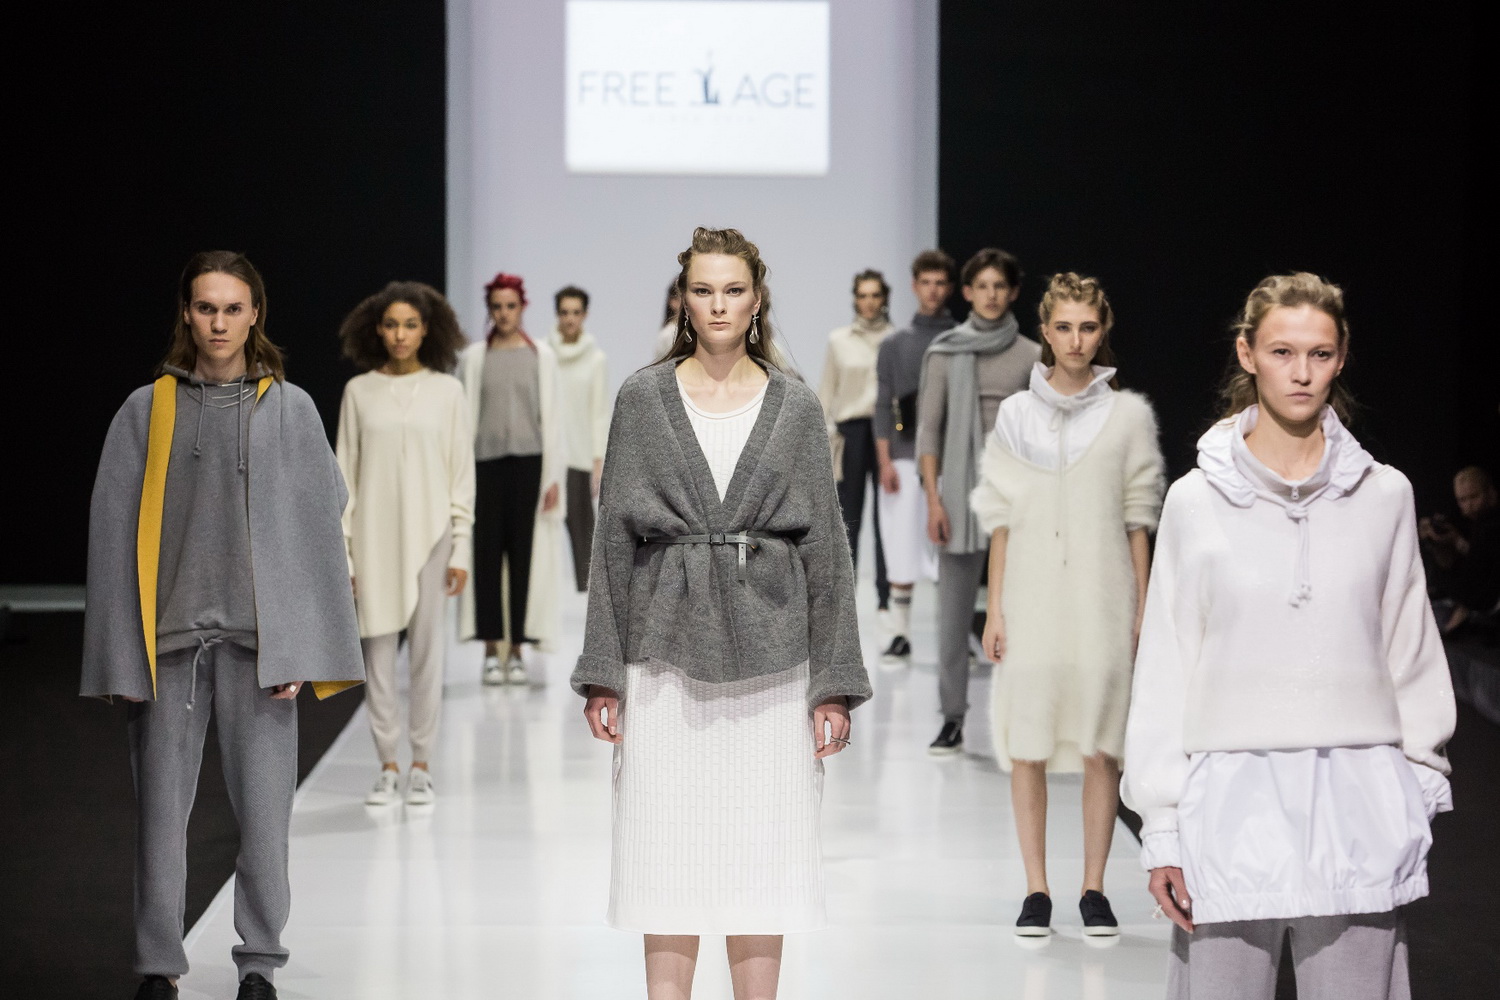 Новая коллекция FREE AGE на подиуме Недели моды в Москве